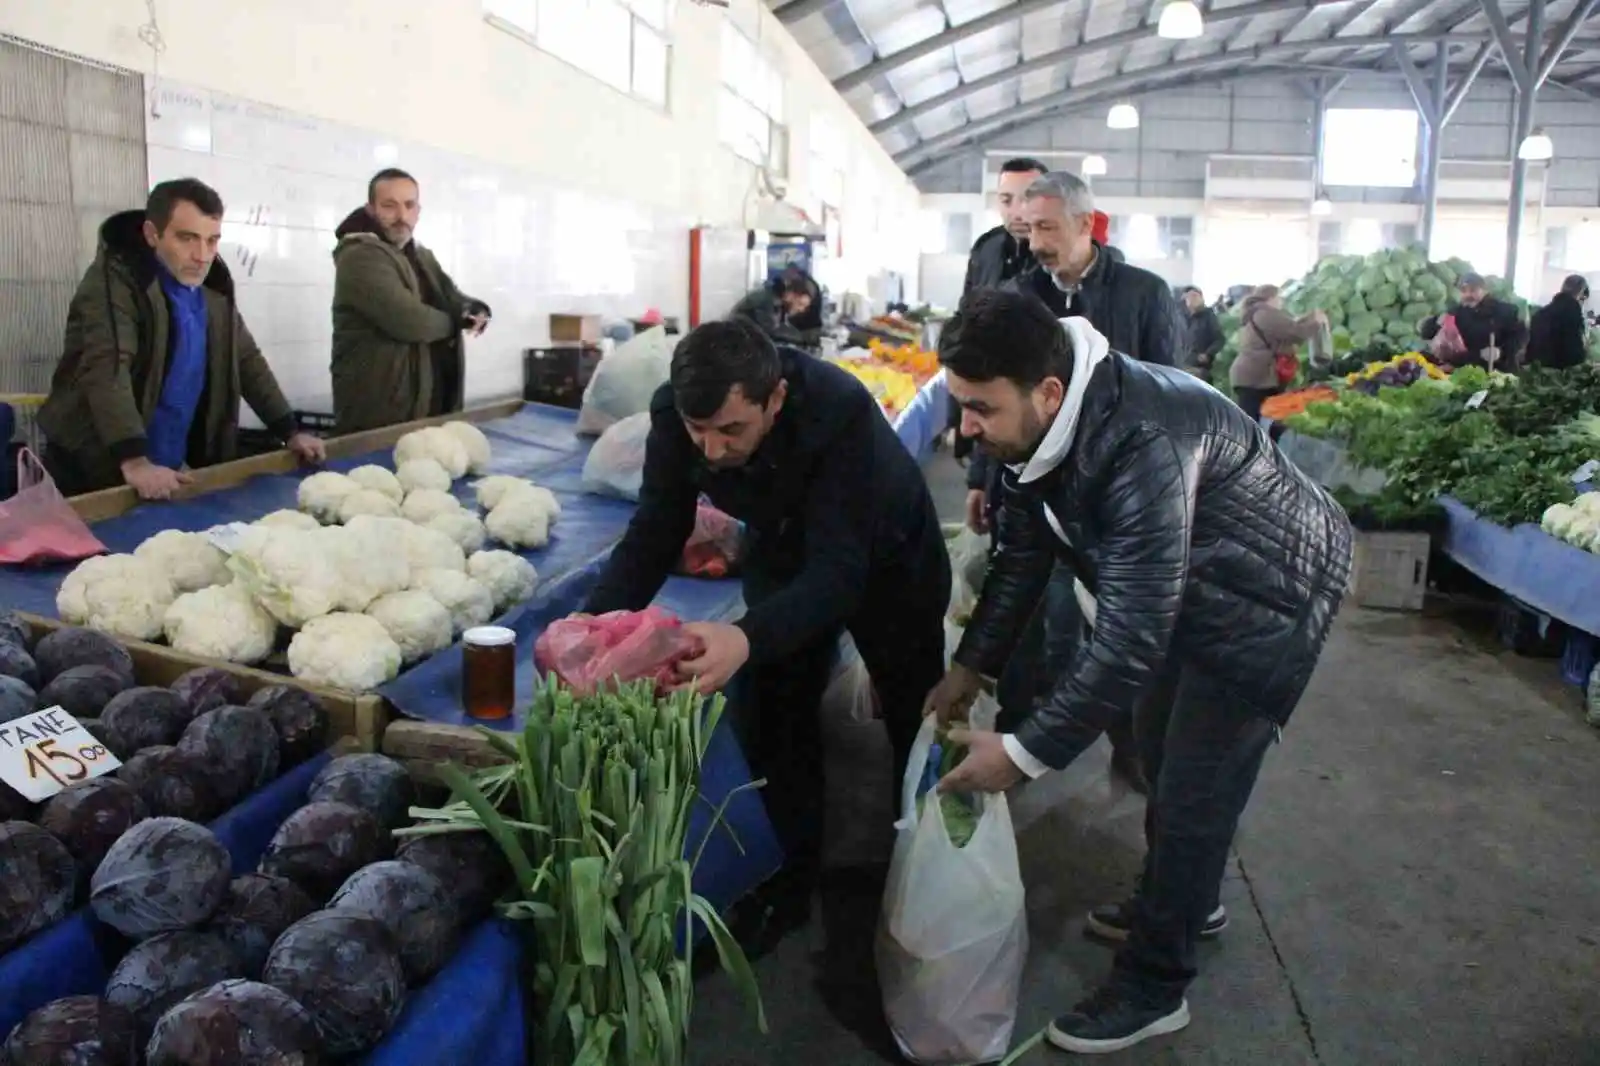 Amasyalı pazarcılardan depremzedeler için sebze-meyve kampanyası: “Acılar paylaştıkça azalacak”
